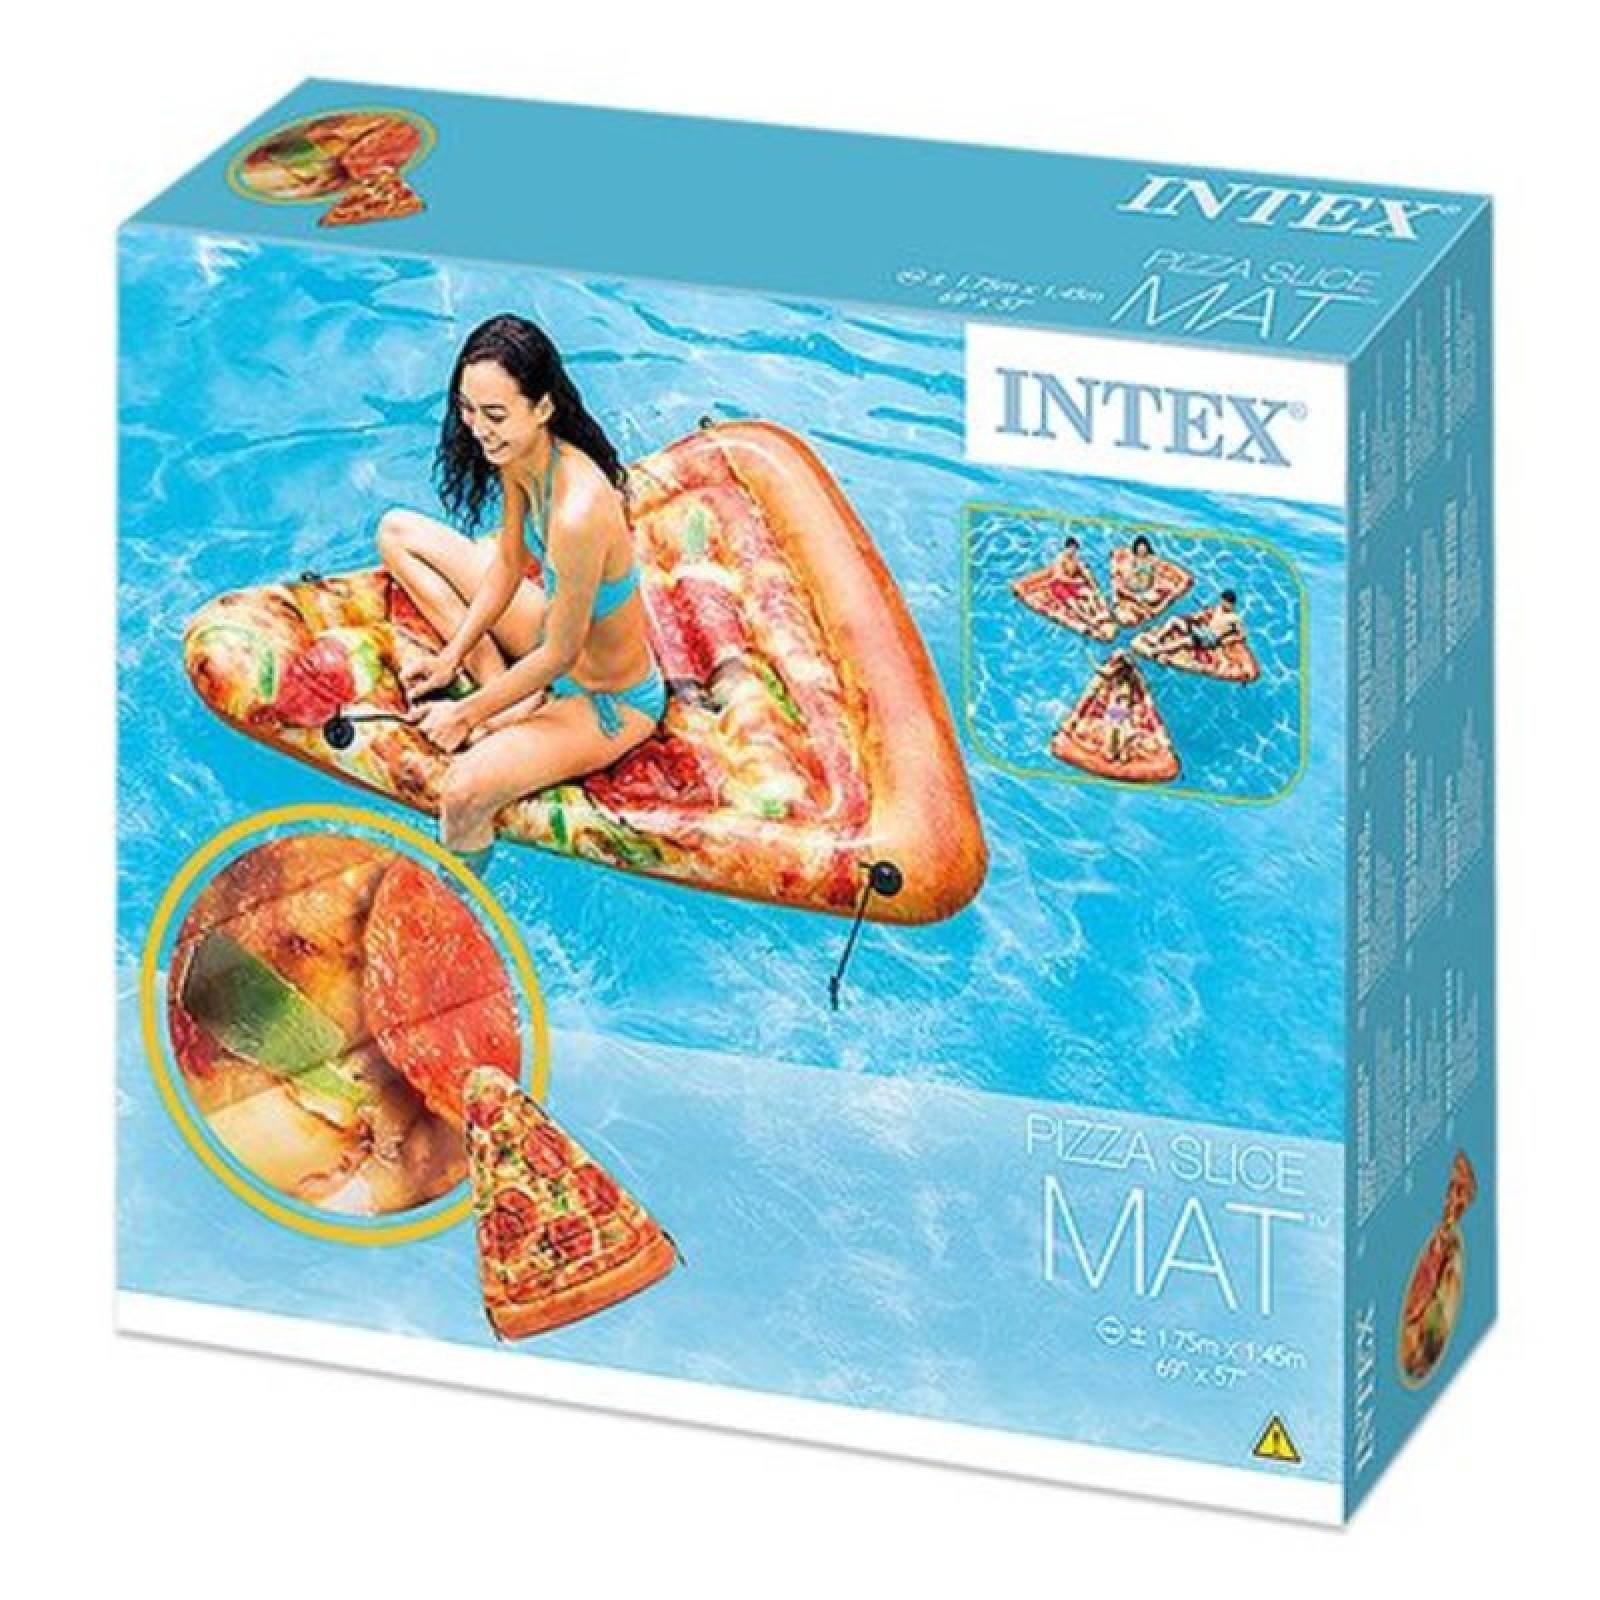 Flotador Colchon Inflable Pizza Realista Enganchables Intex